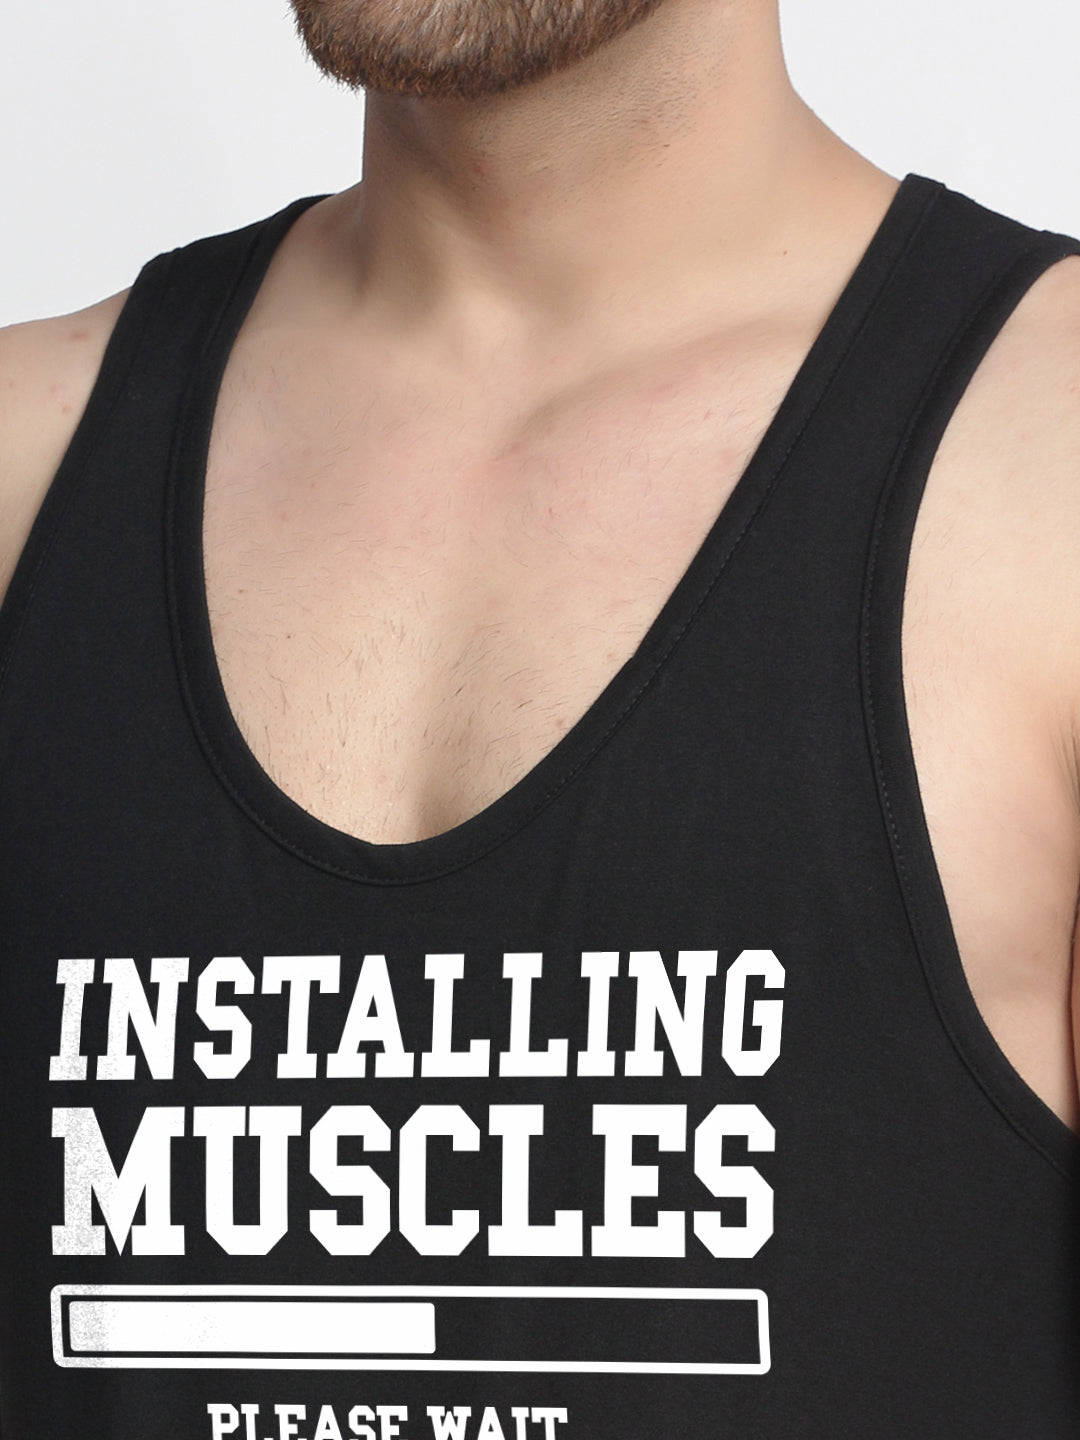 Men's Pack of 2 Black & Mustard Printed Gym vest - Friskers